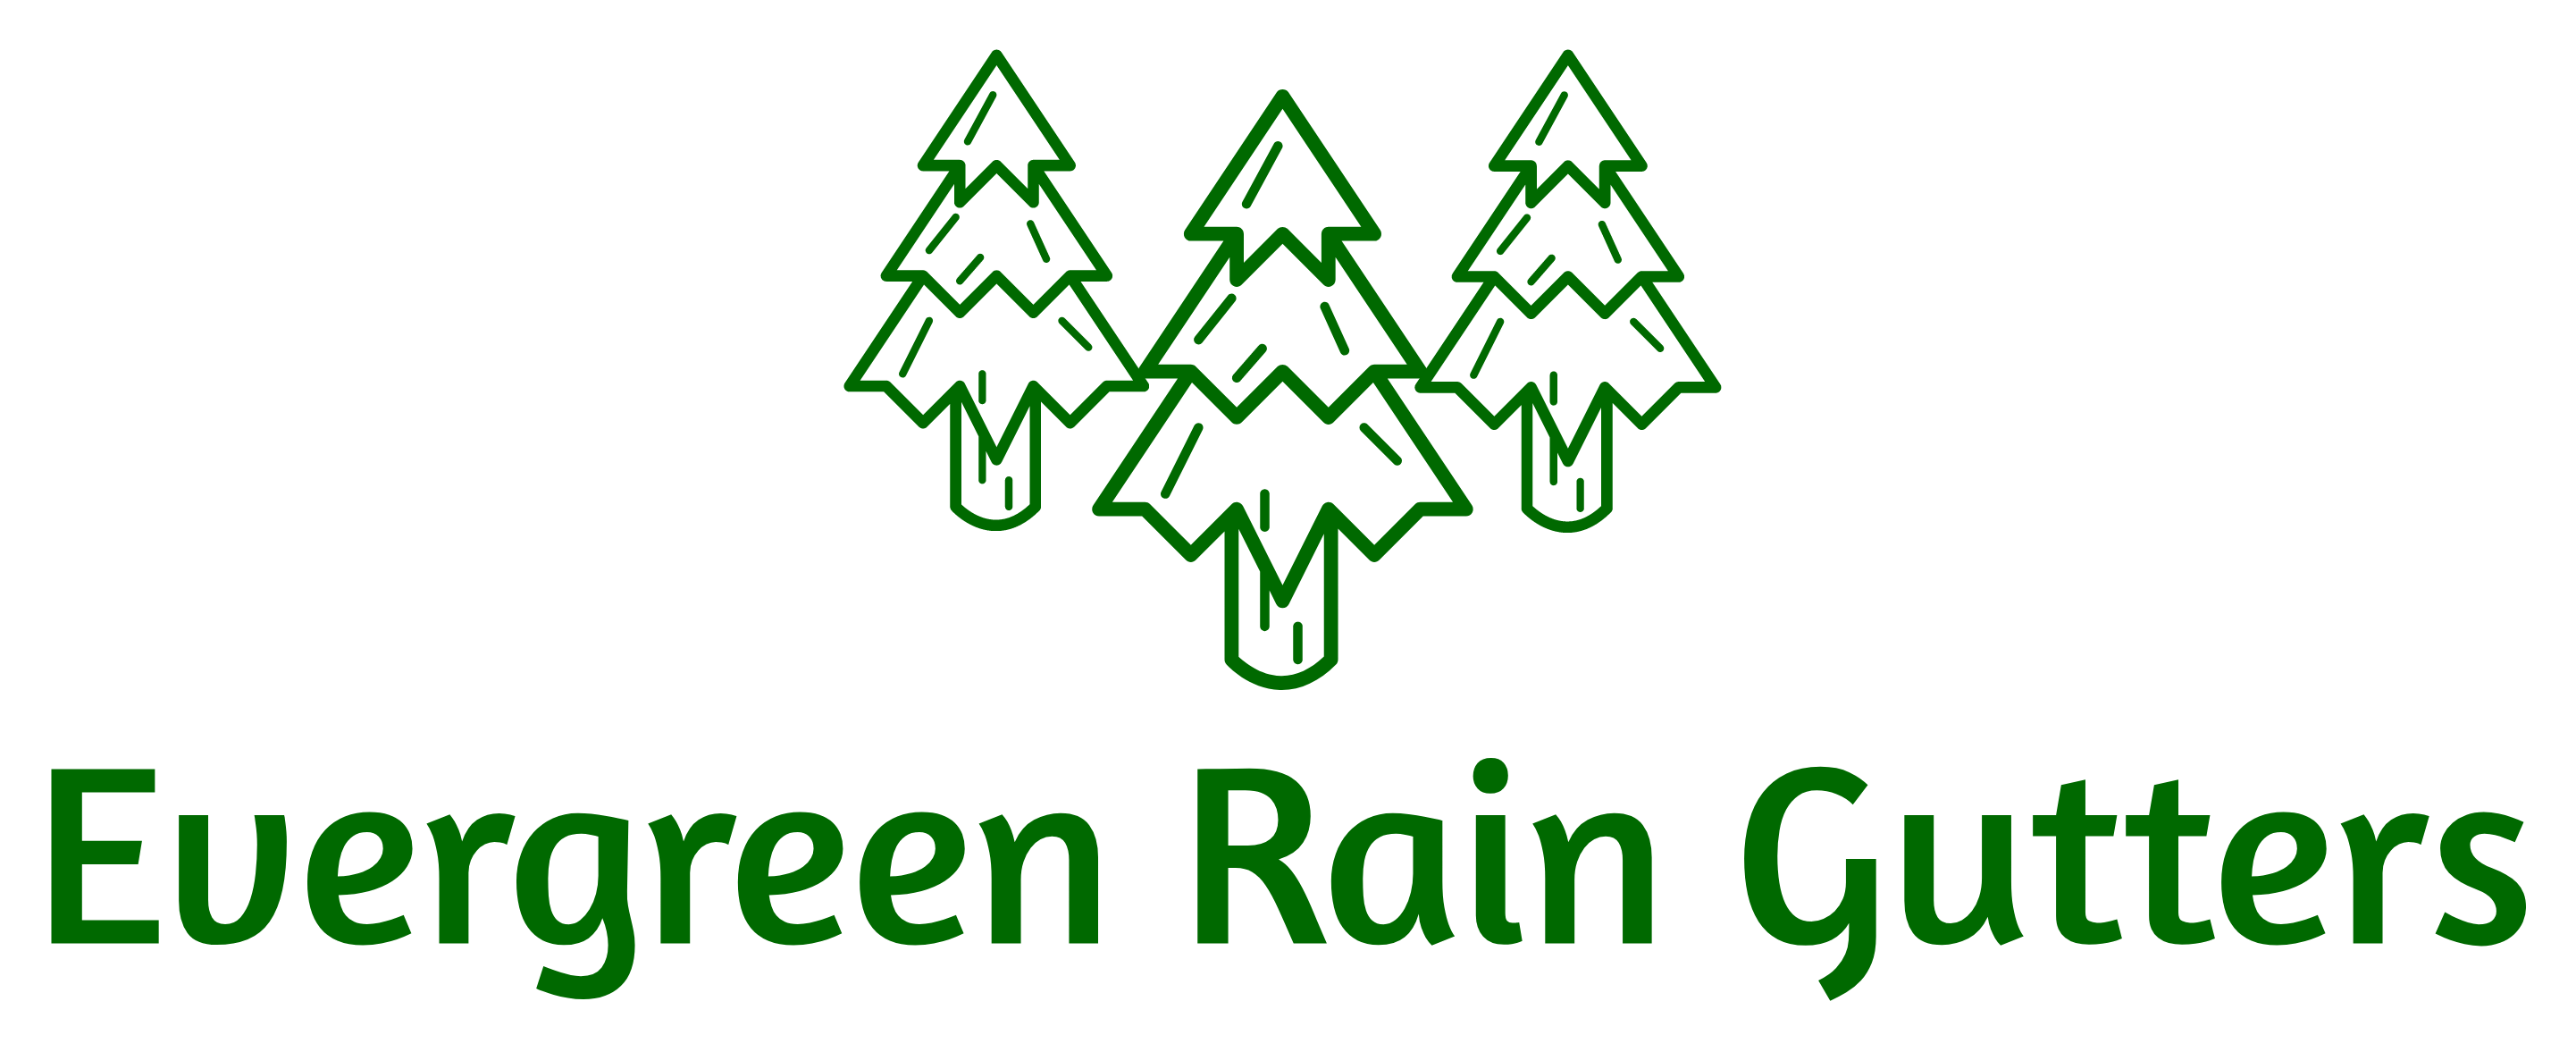 Evergreen Rain Gutters, LLC Logo